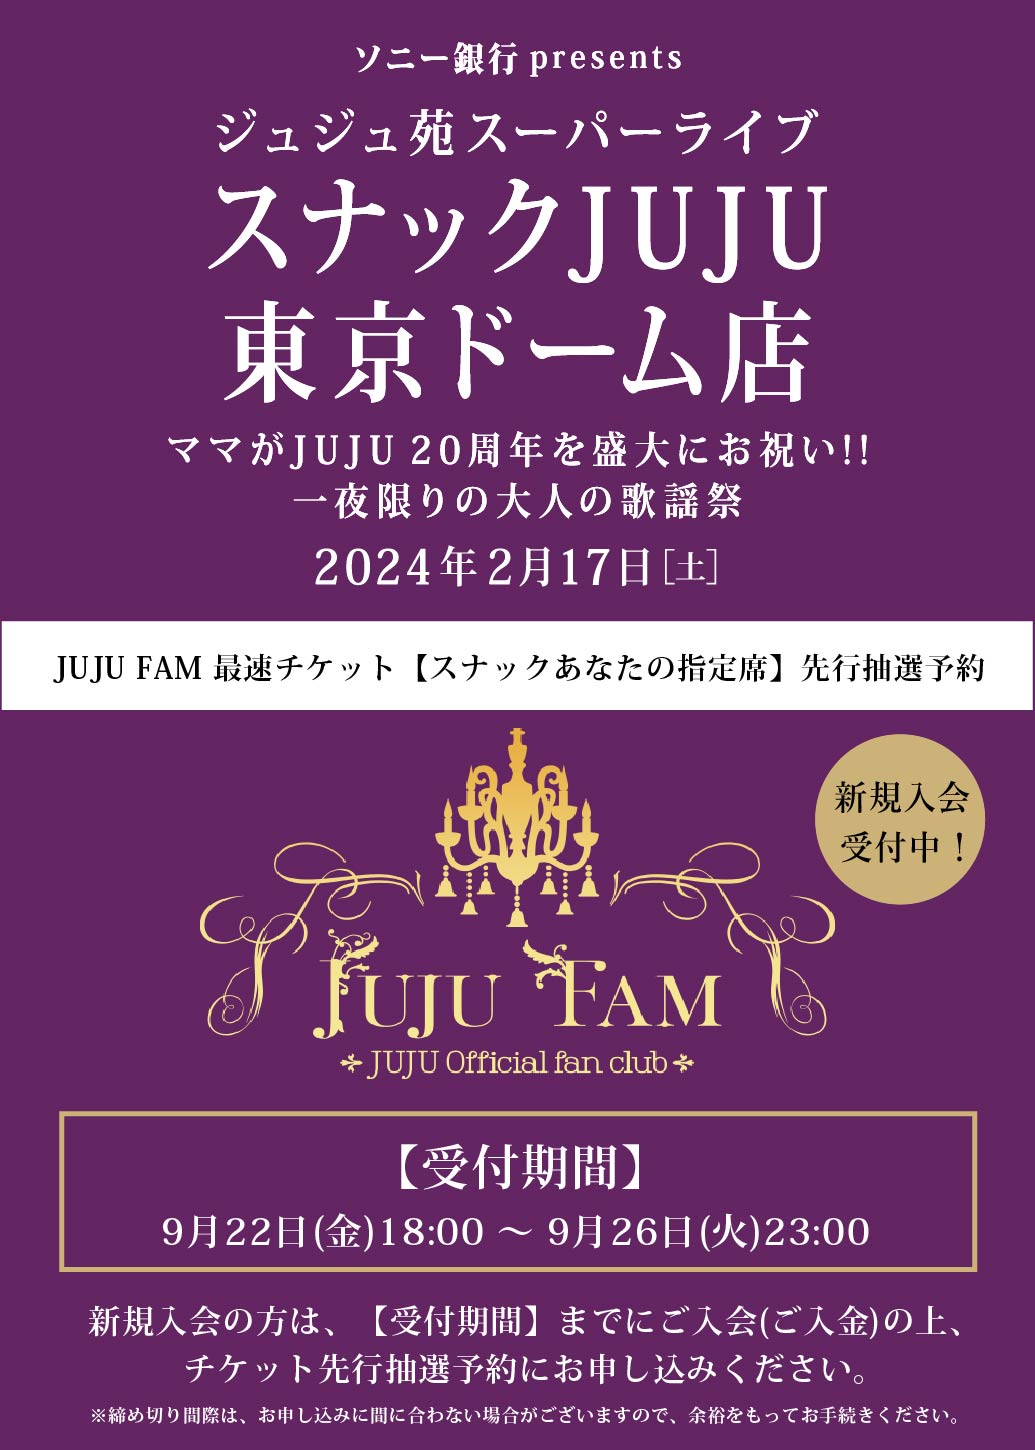 JUJU FAM チケット【スナックあなたの指定席】先行抽選予約